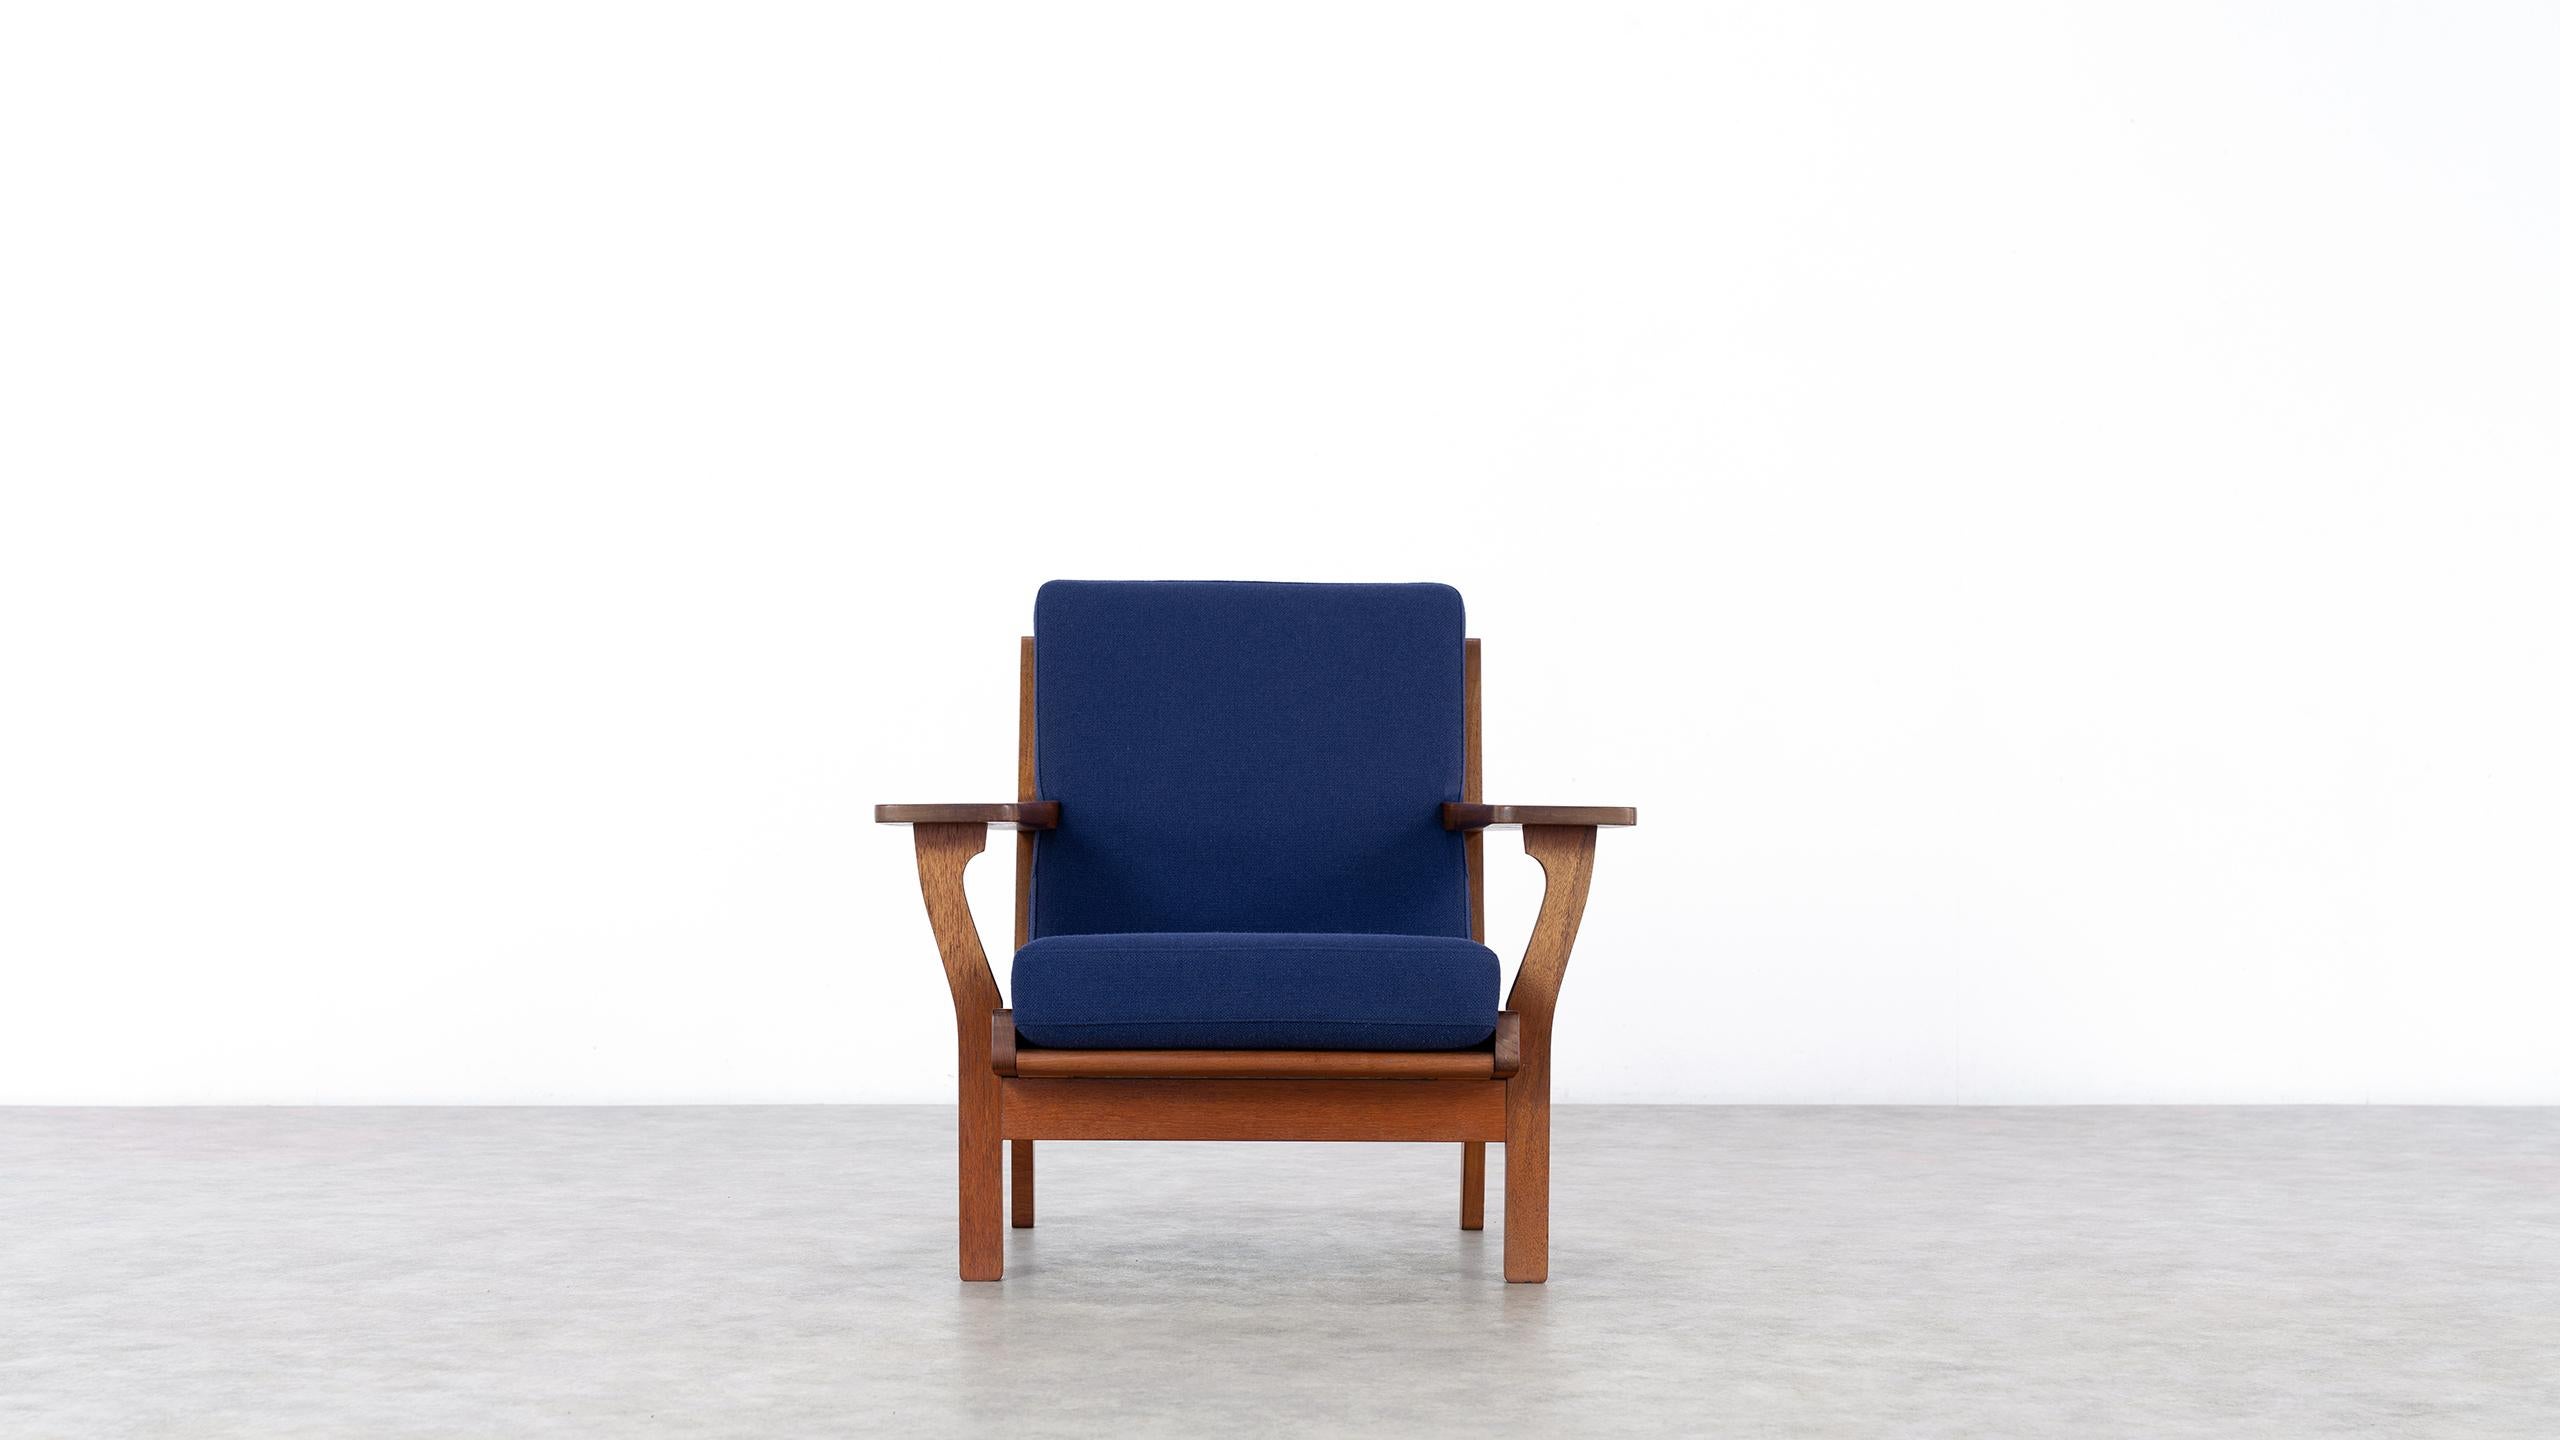 Scandinavian Modern Hans J. Wegner, Original 1956, Lounge Chair Armchair GE-320 by GETAMA, Denmark